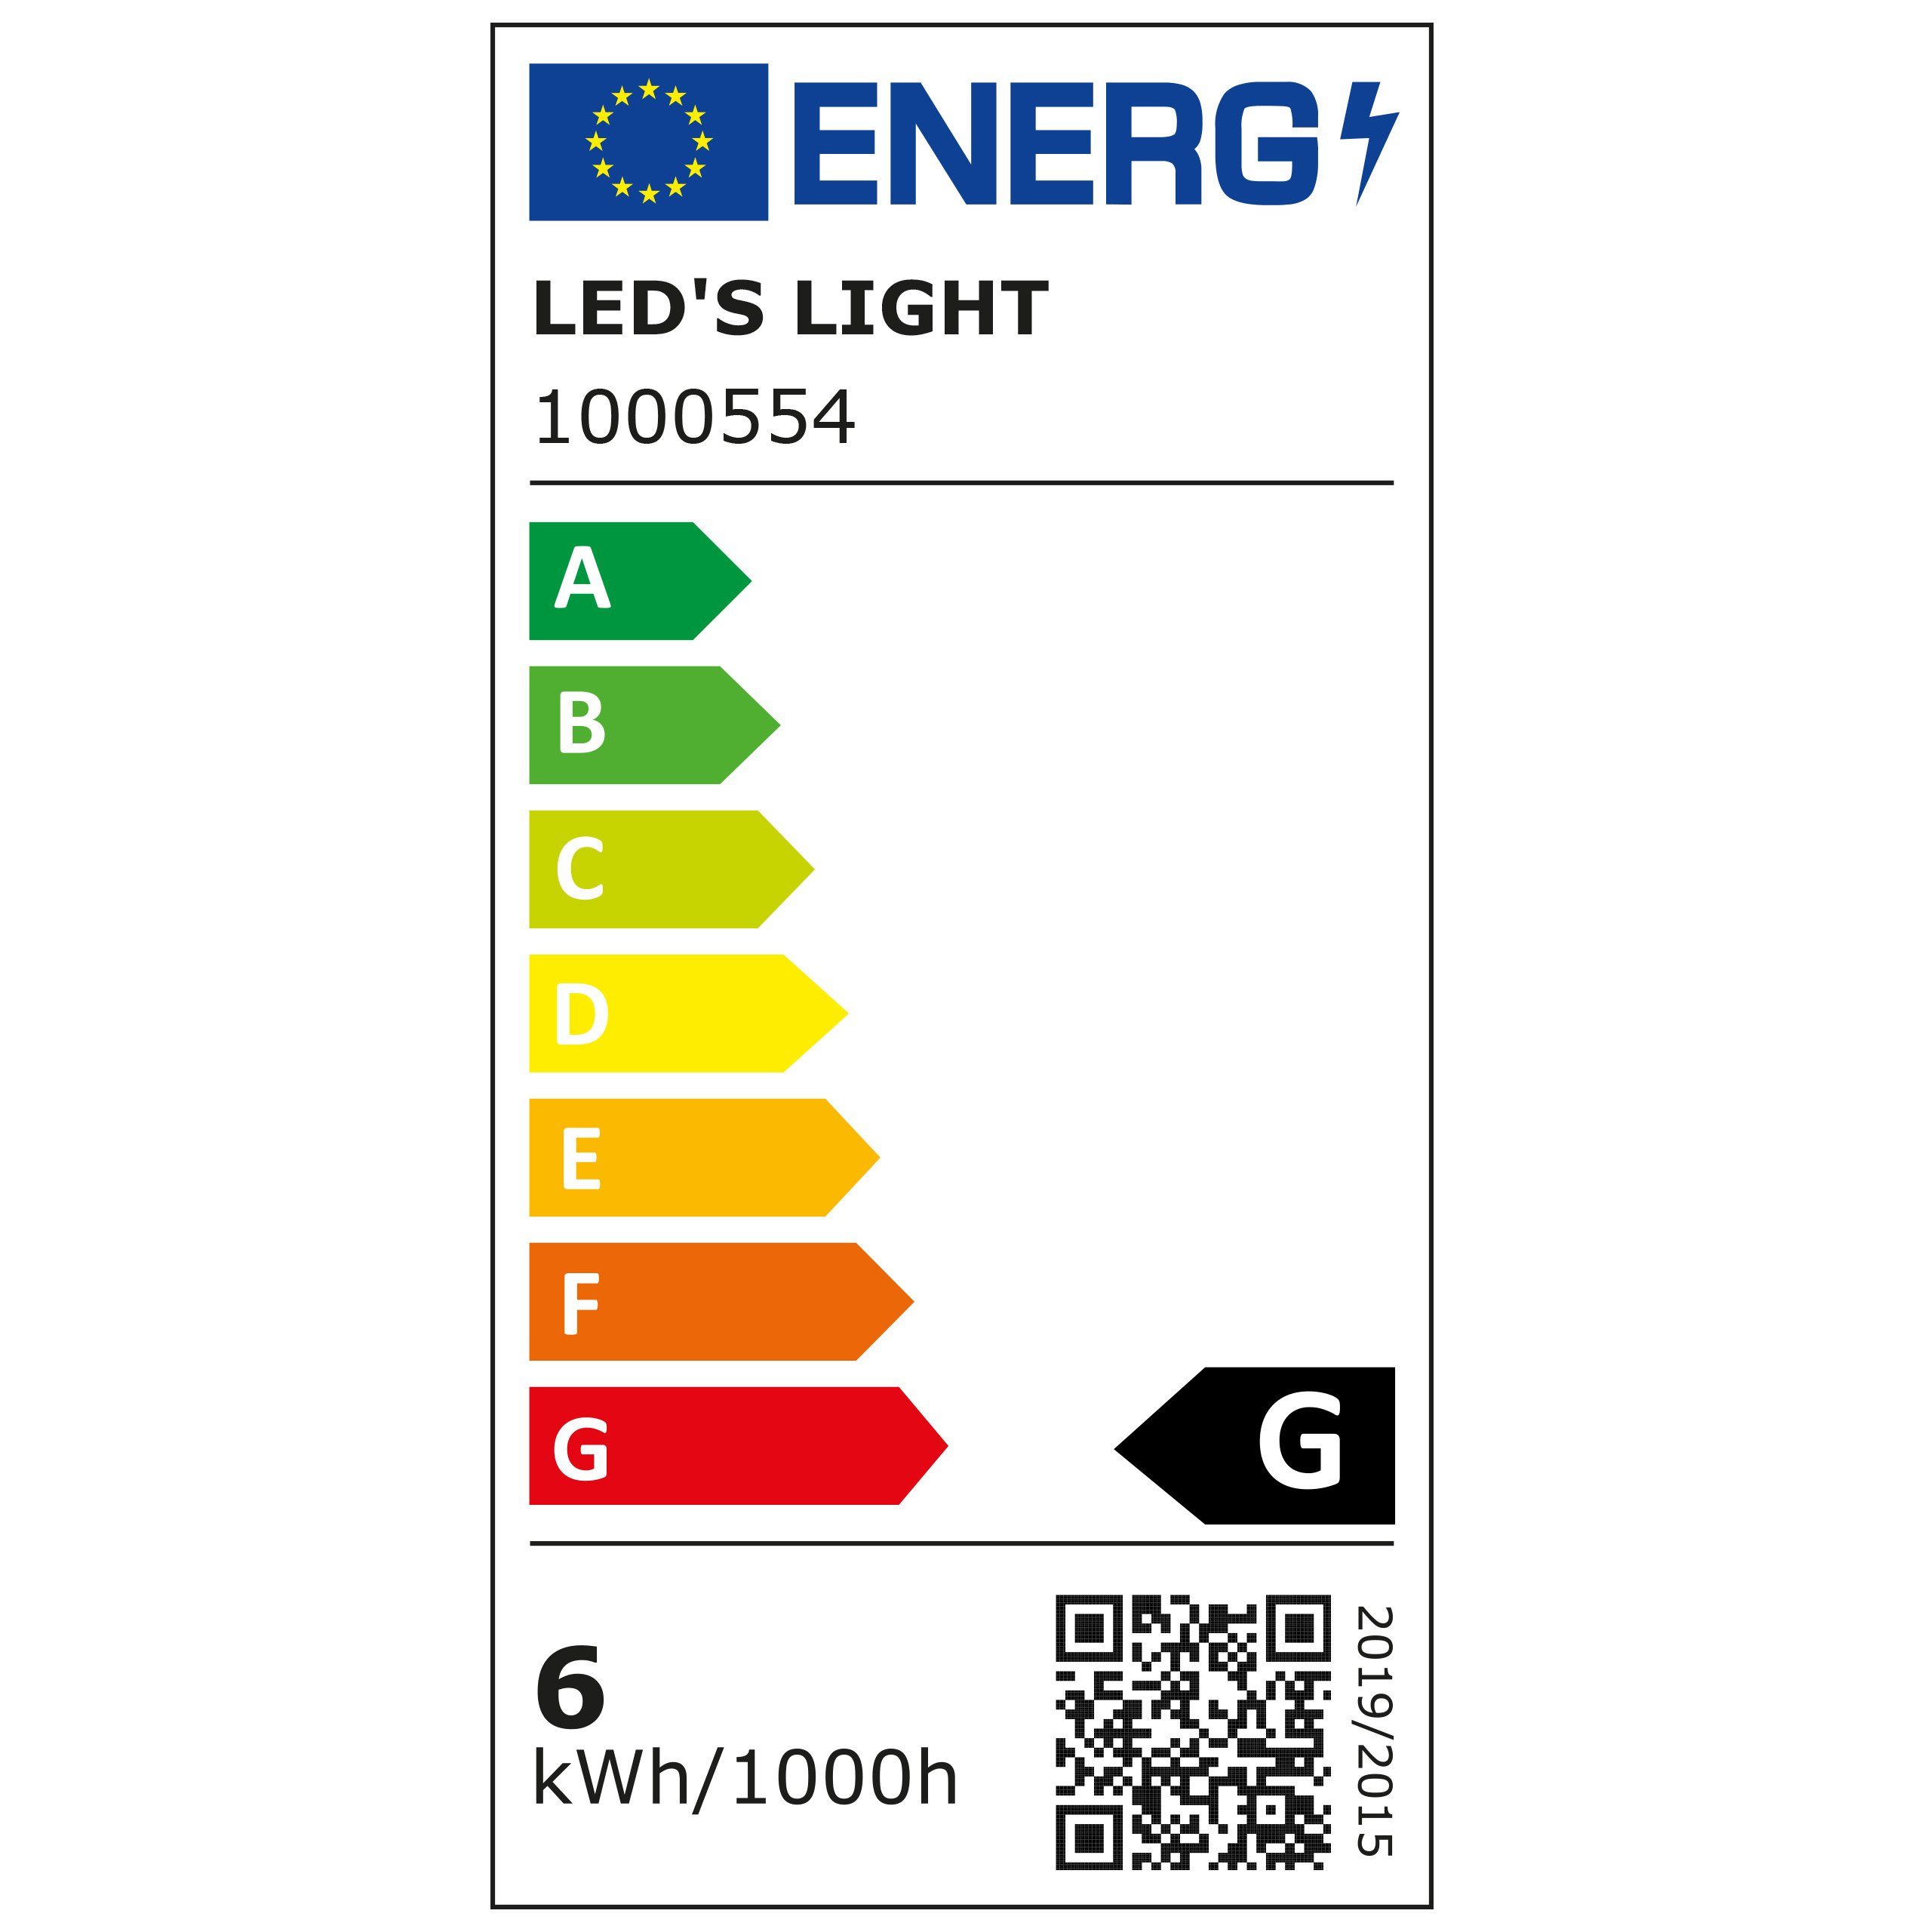 Watt warmweiß LED LED's LED Außen-Wandleuchte, IP65 Außen-Wandleuchte 1000554 6 anthrazit LED, Up-Down light